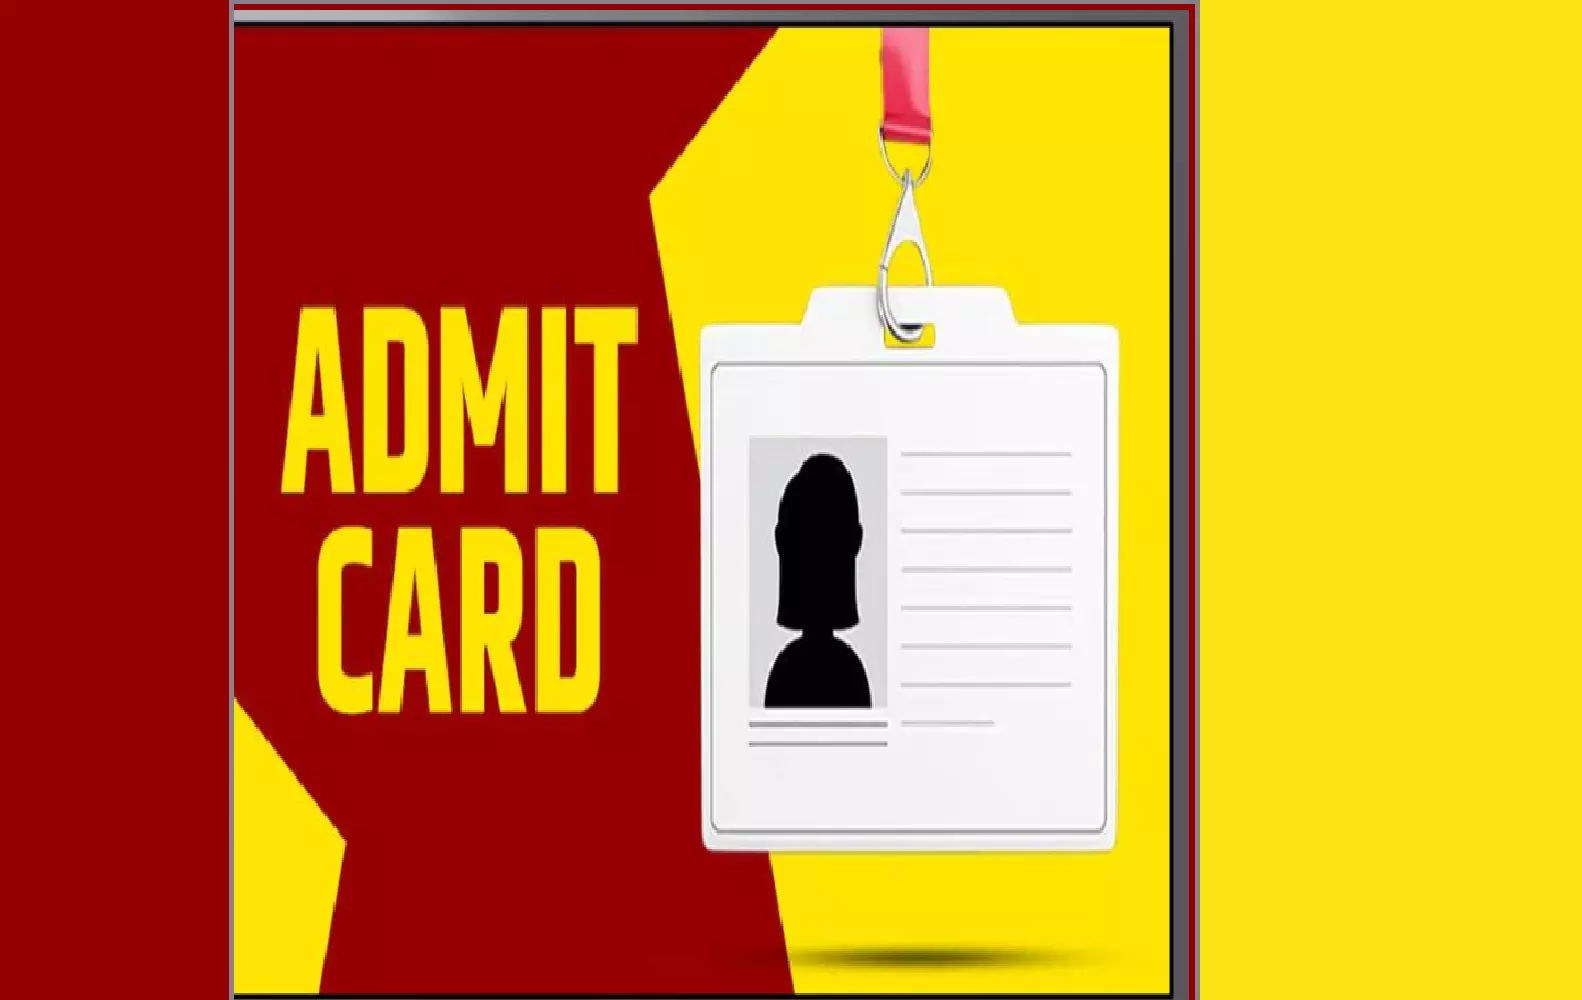 Bihar Board द्वारा 12वीं प्रैक्टिकल परीक्षाओं के लिए एडमिट कार्ड जारी, इस लिंक से करे डाउनलोड